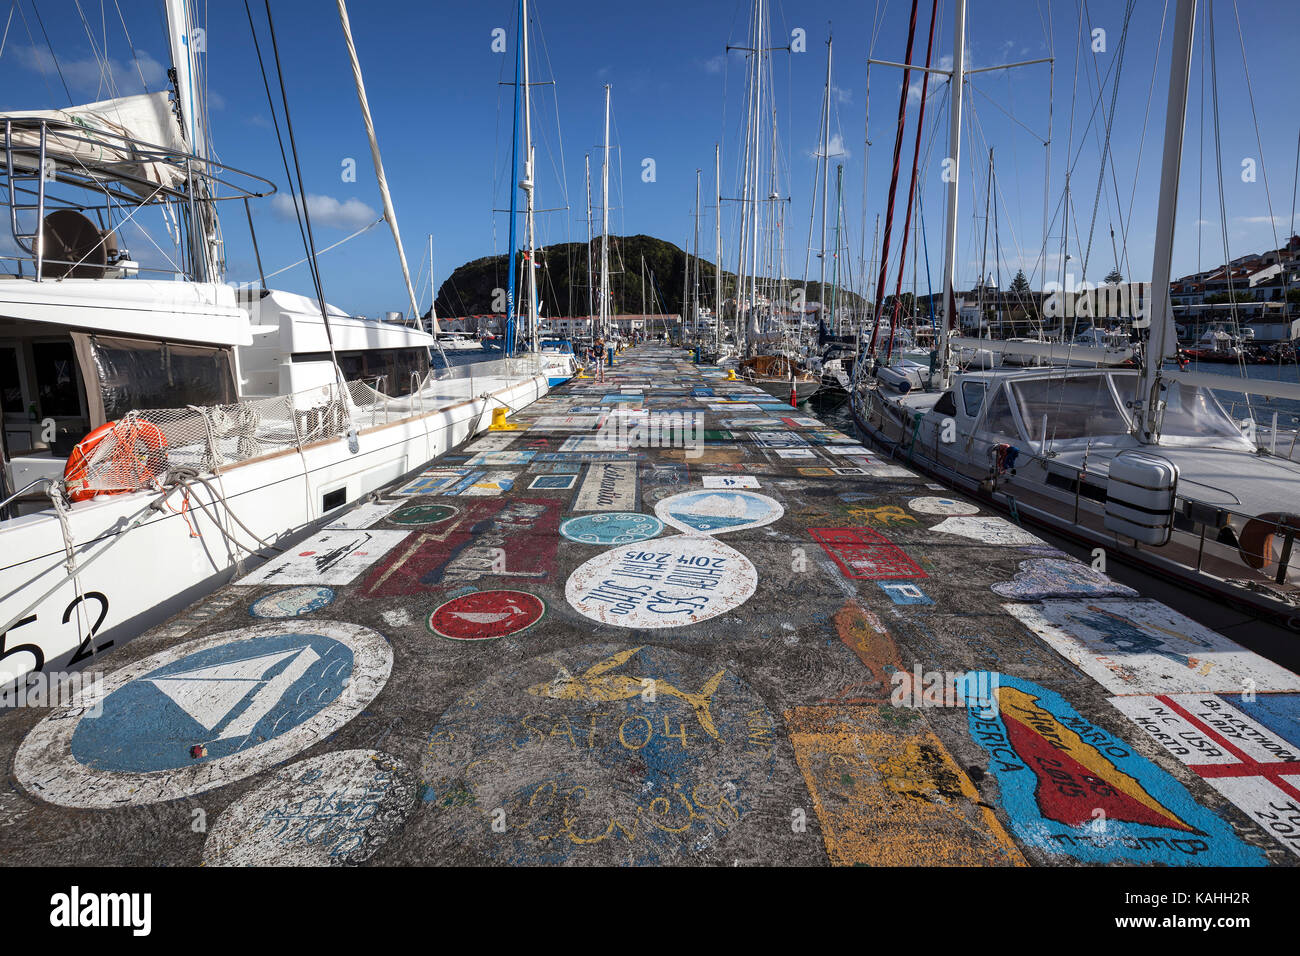 Sailor pintada pared Quay, el puerto, la marina, Horta, isla de Faial, Azores, Portugal Foto de stock